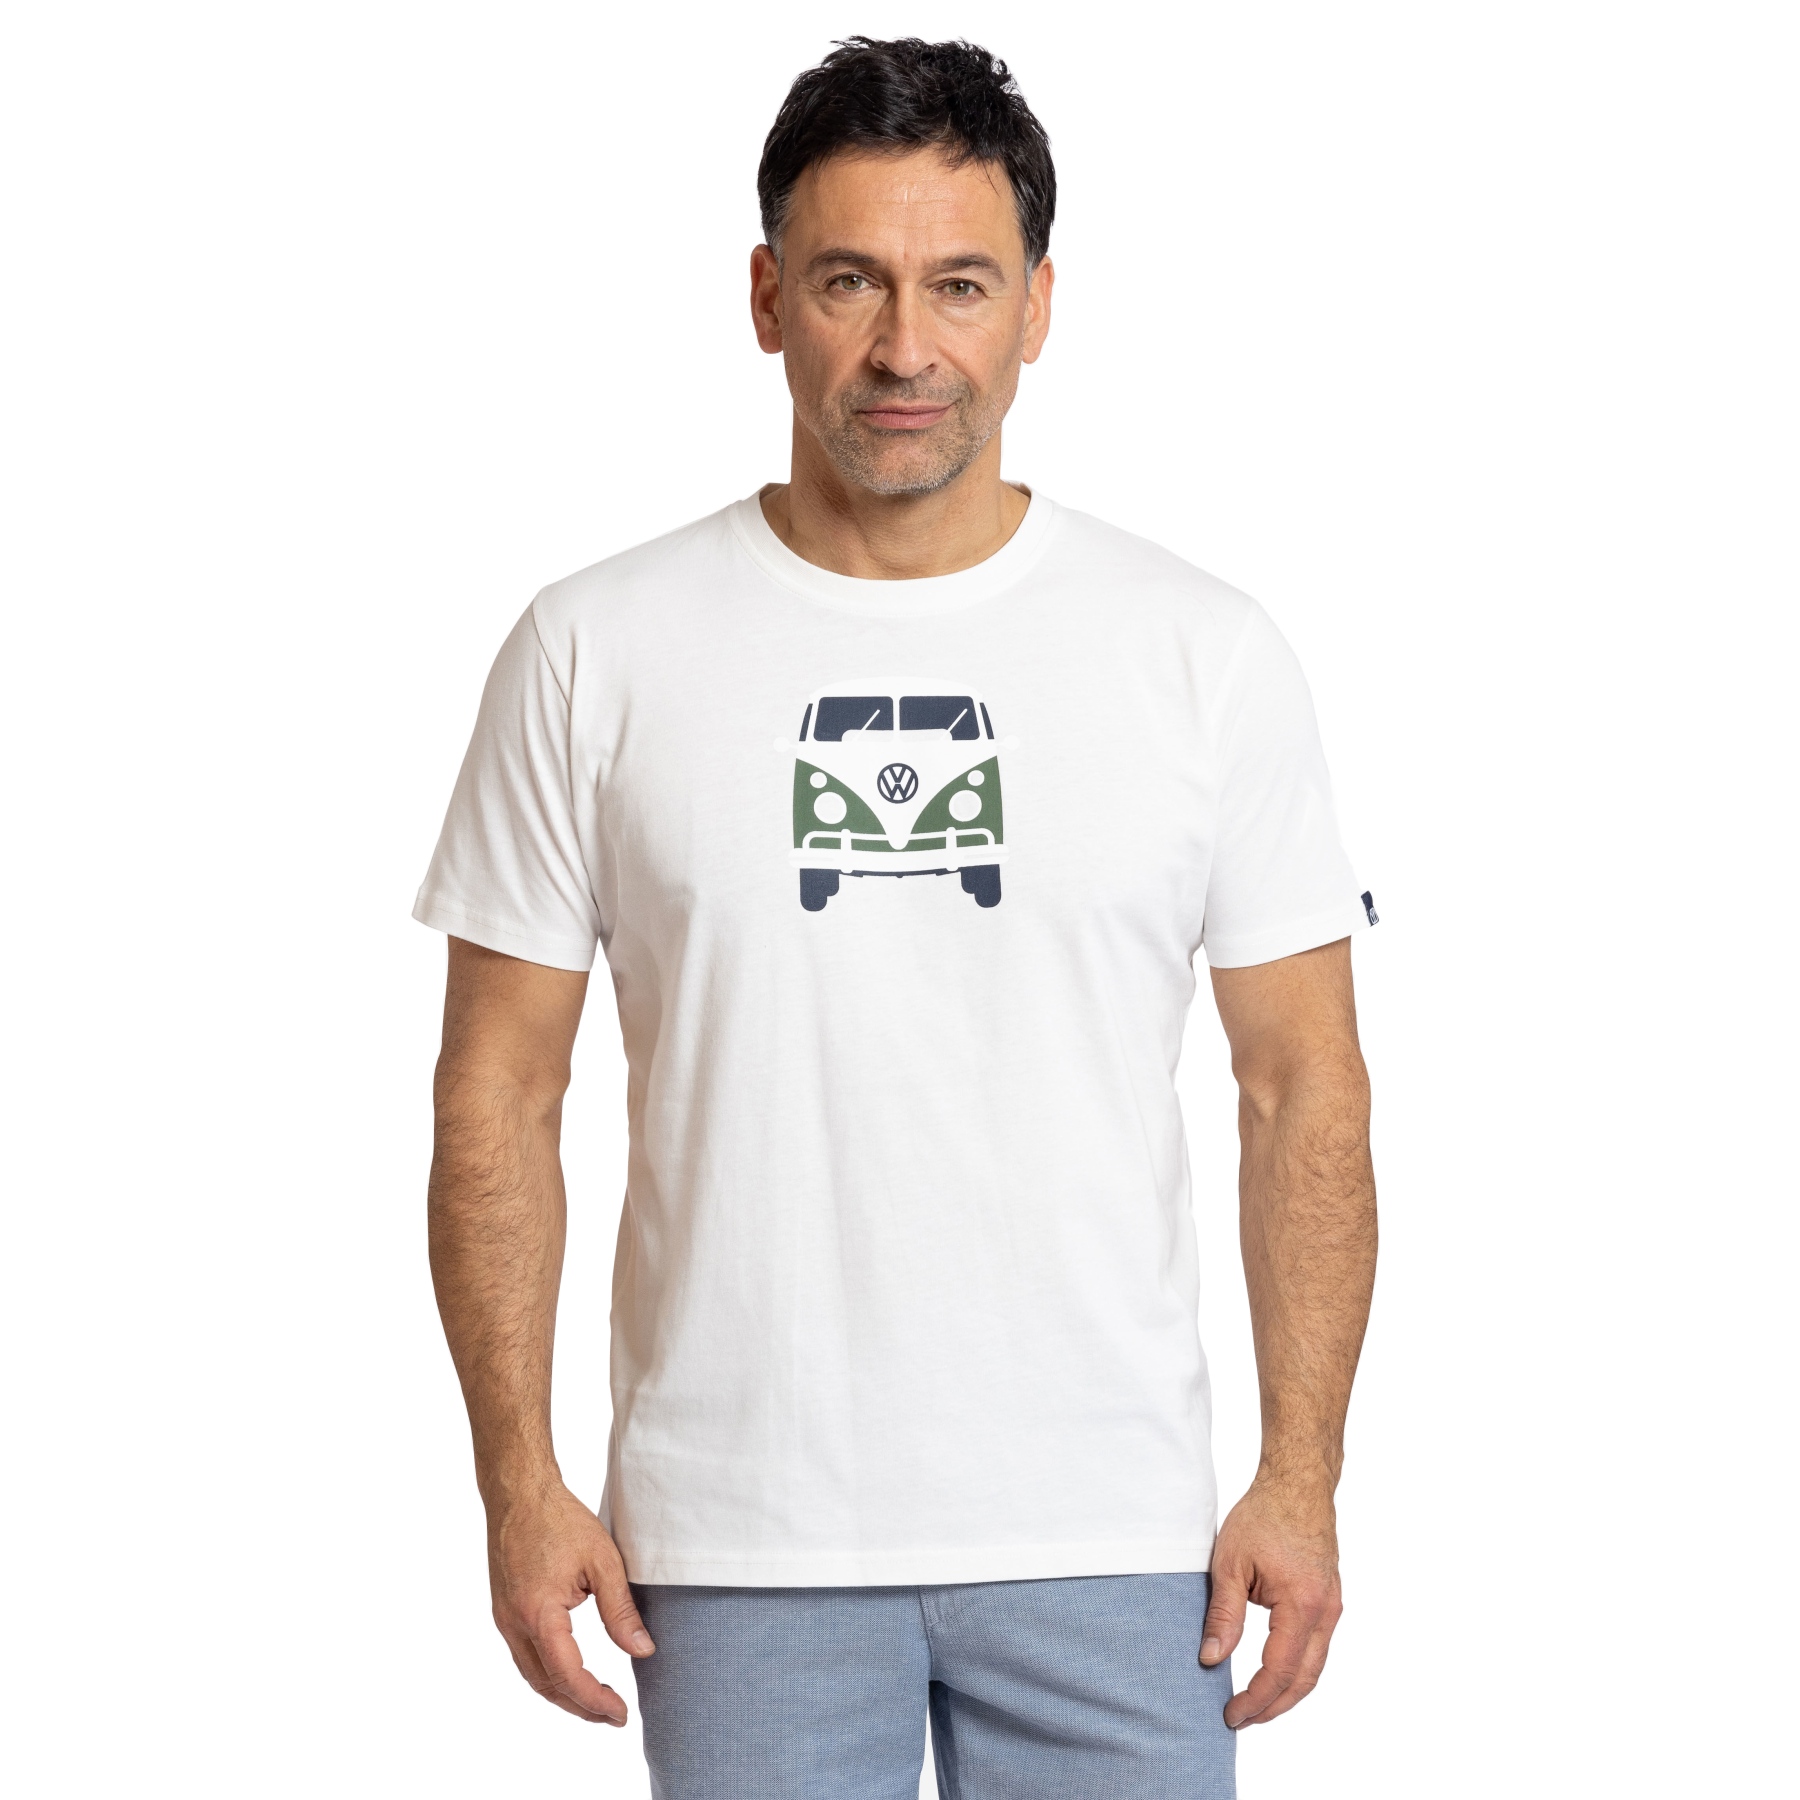 Produktbild von Elkline METHUSALEM T-Shirt Herren - Lizensiert von VW - weiß